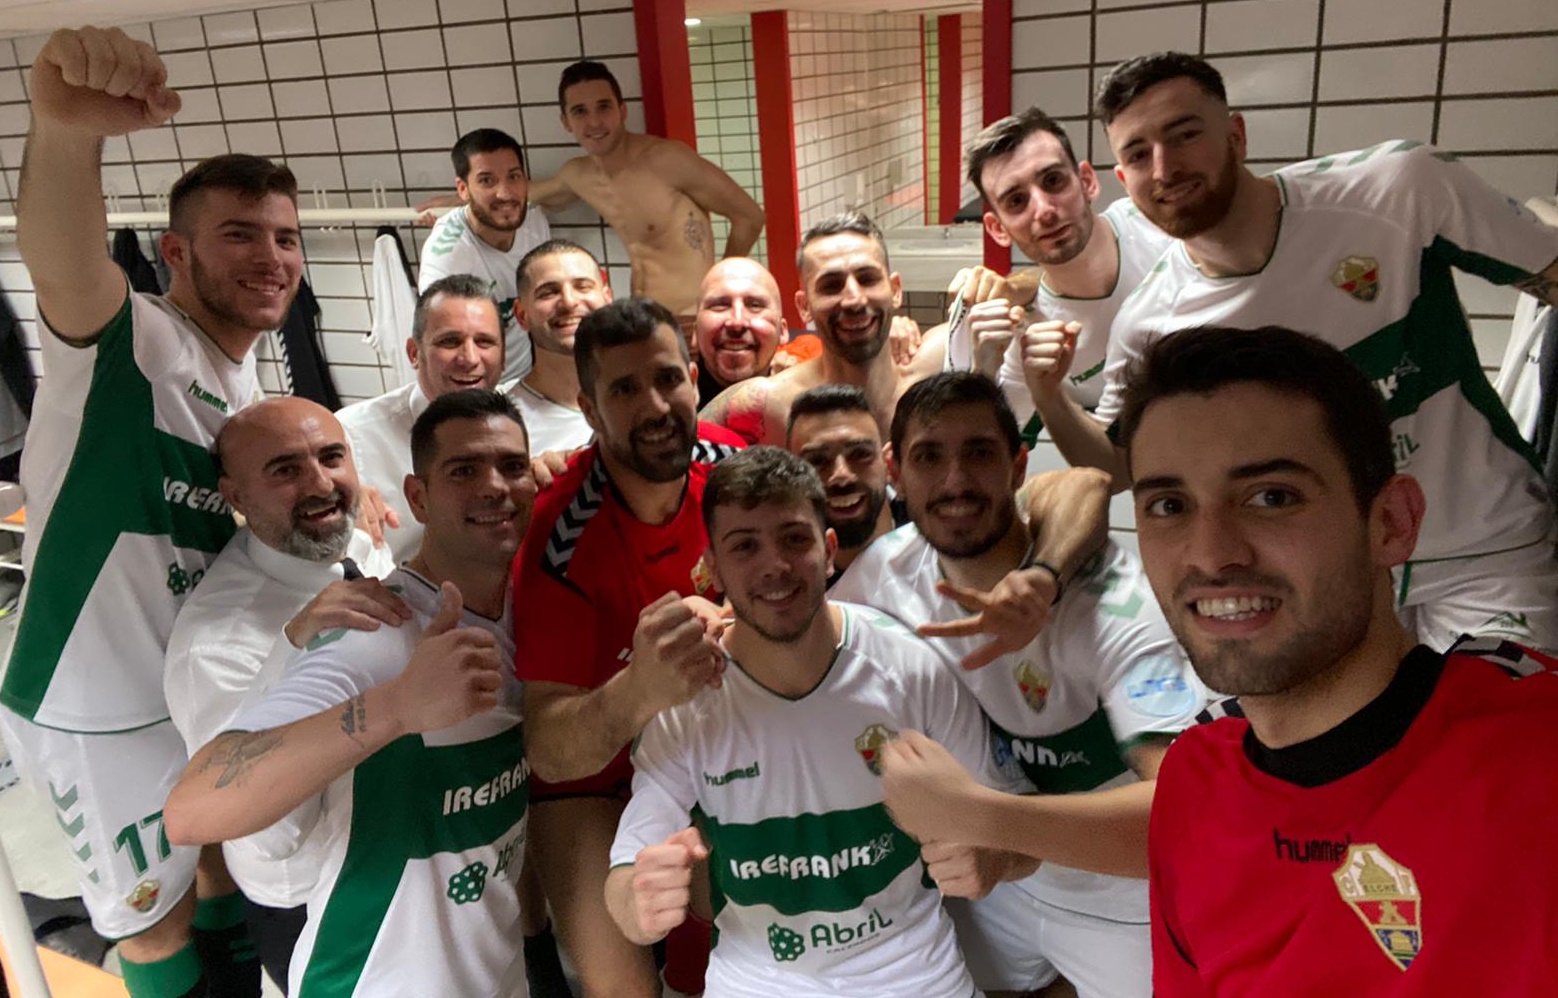 Los jugadores del Irefrank Elche CF sala celebran una victoria en el vestuario / twitter Juan Carlos Guillamón